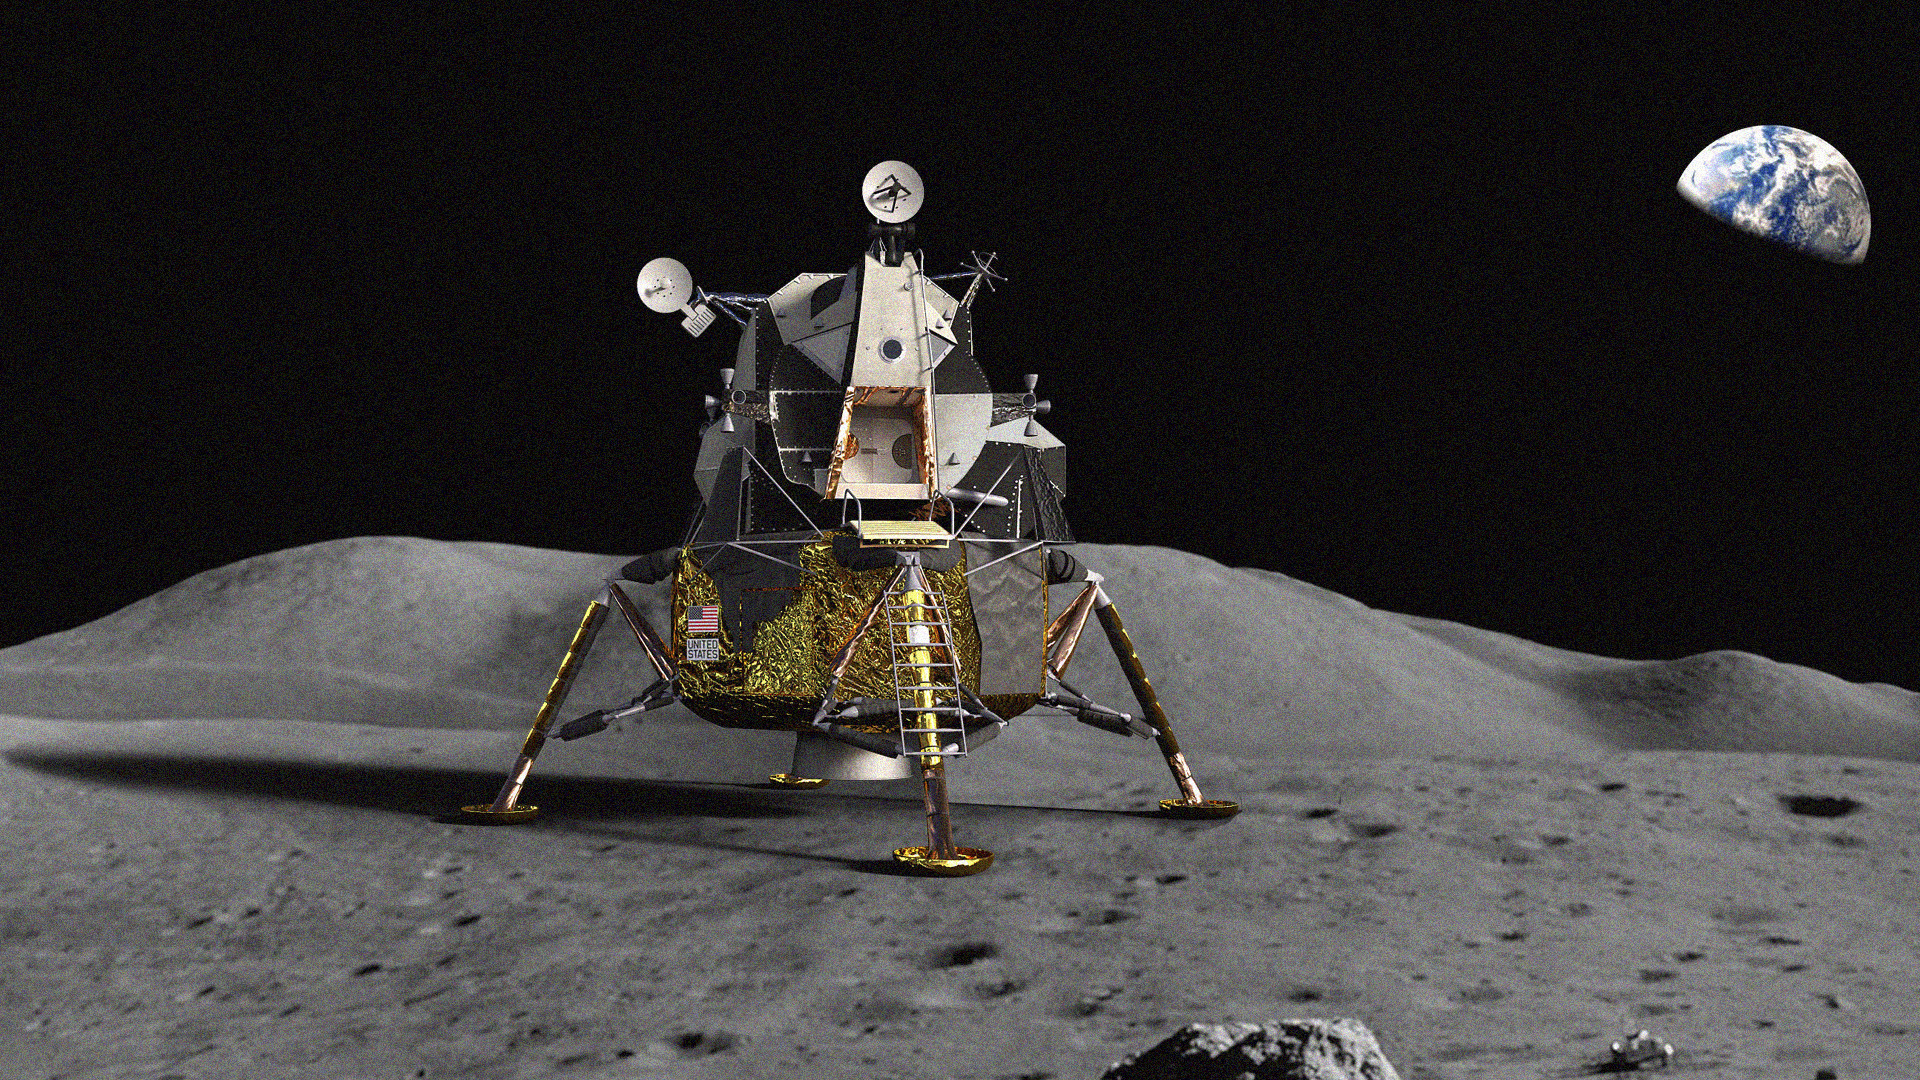 Корабль на поверхности луны. Лунный модуль Аполлон 11. Космический корабль Аполлон 11. Лунный посадочный модуль Аполлон. Apollo 11 посадочный модуль.